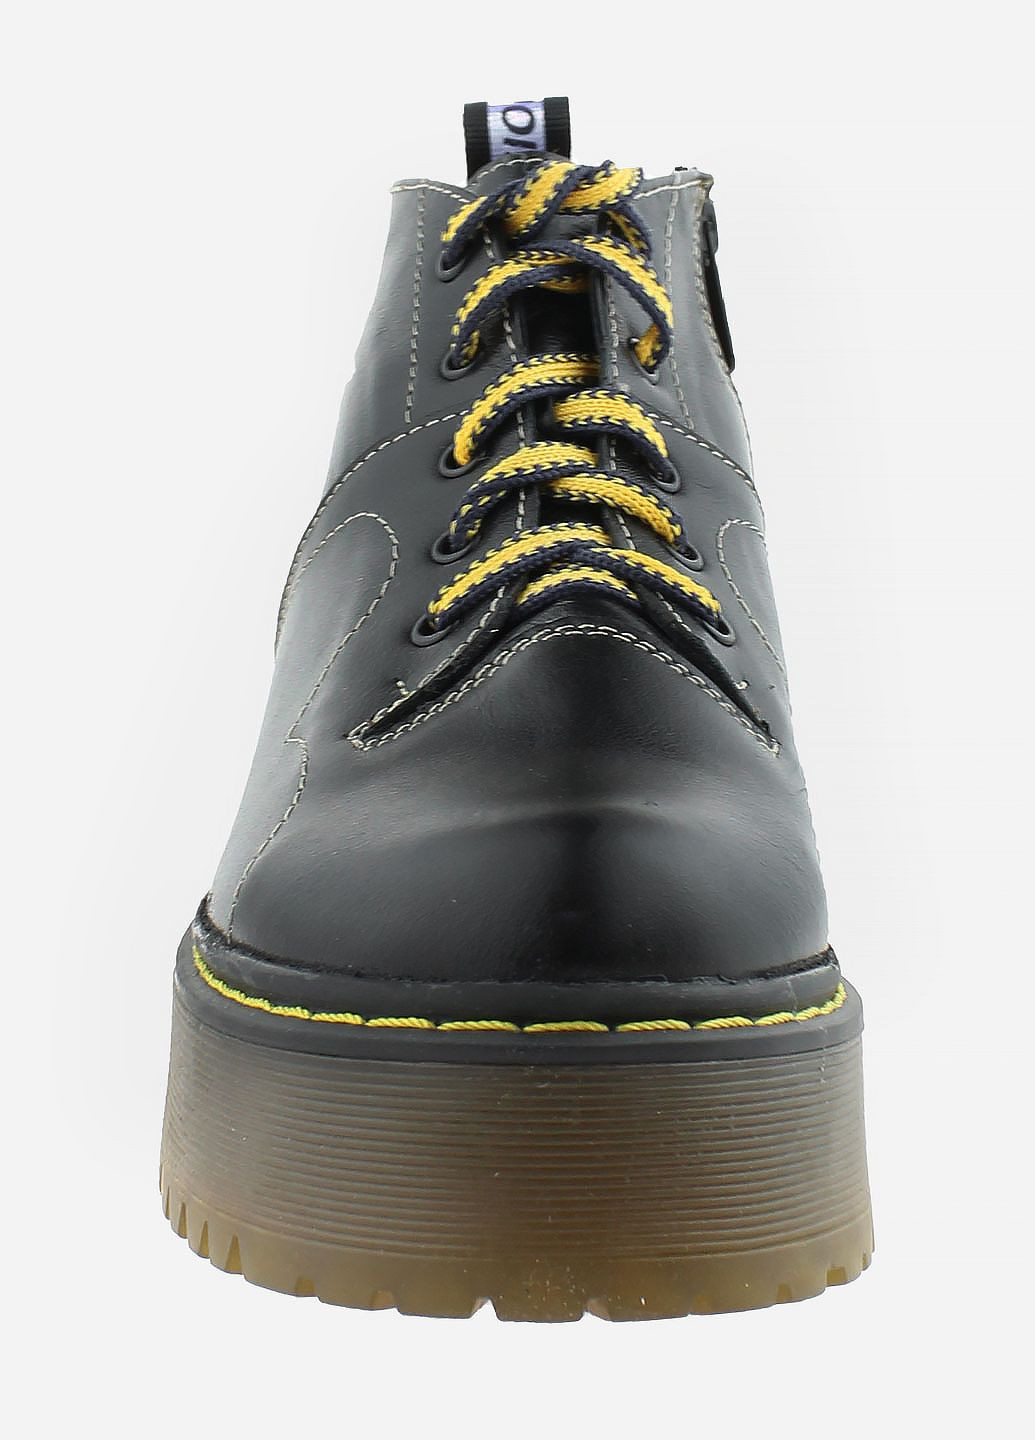 Зимние ботинки rs4949 черный Saurini